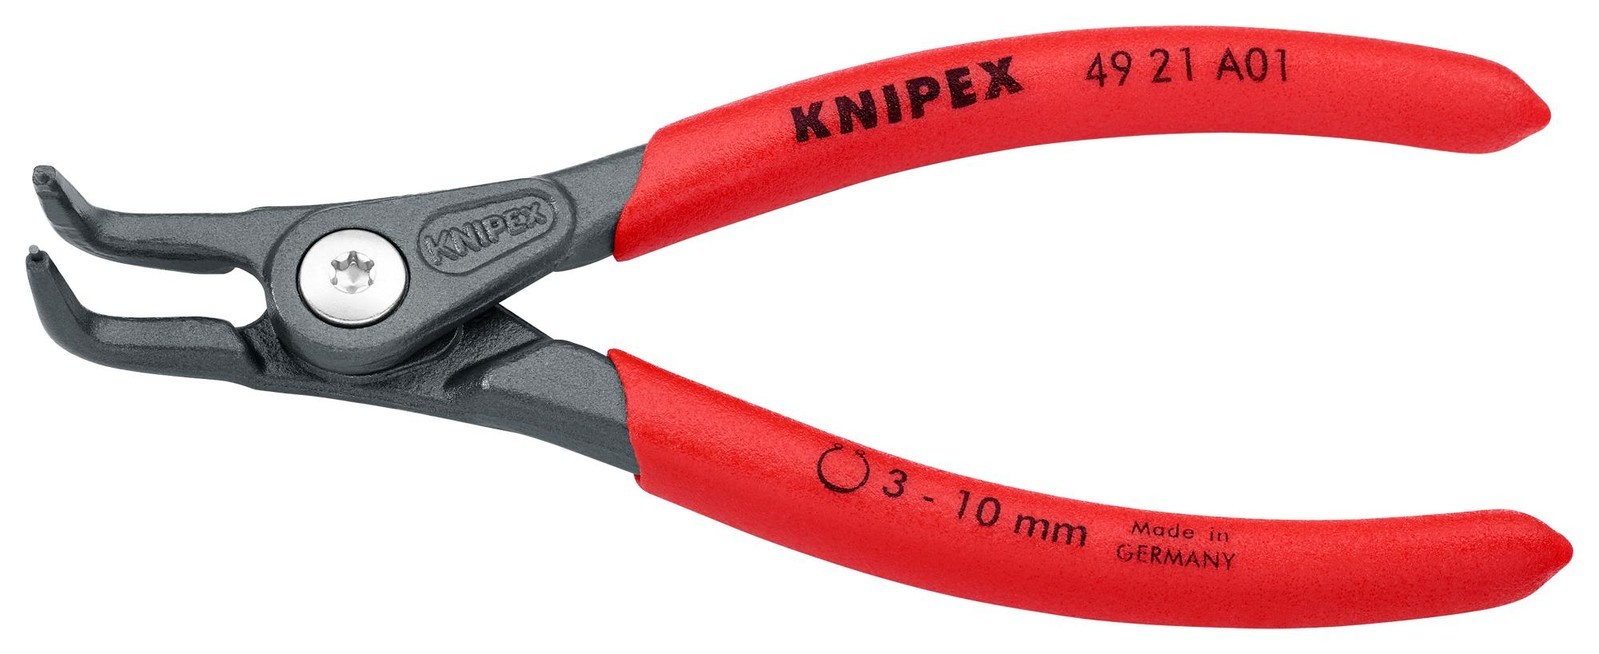 Knipex 49 21 A01 Circlip Plier, Ext, Bent